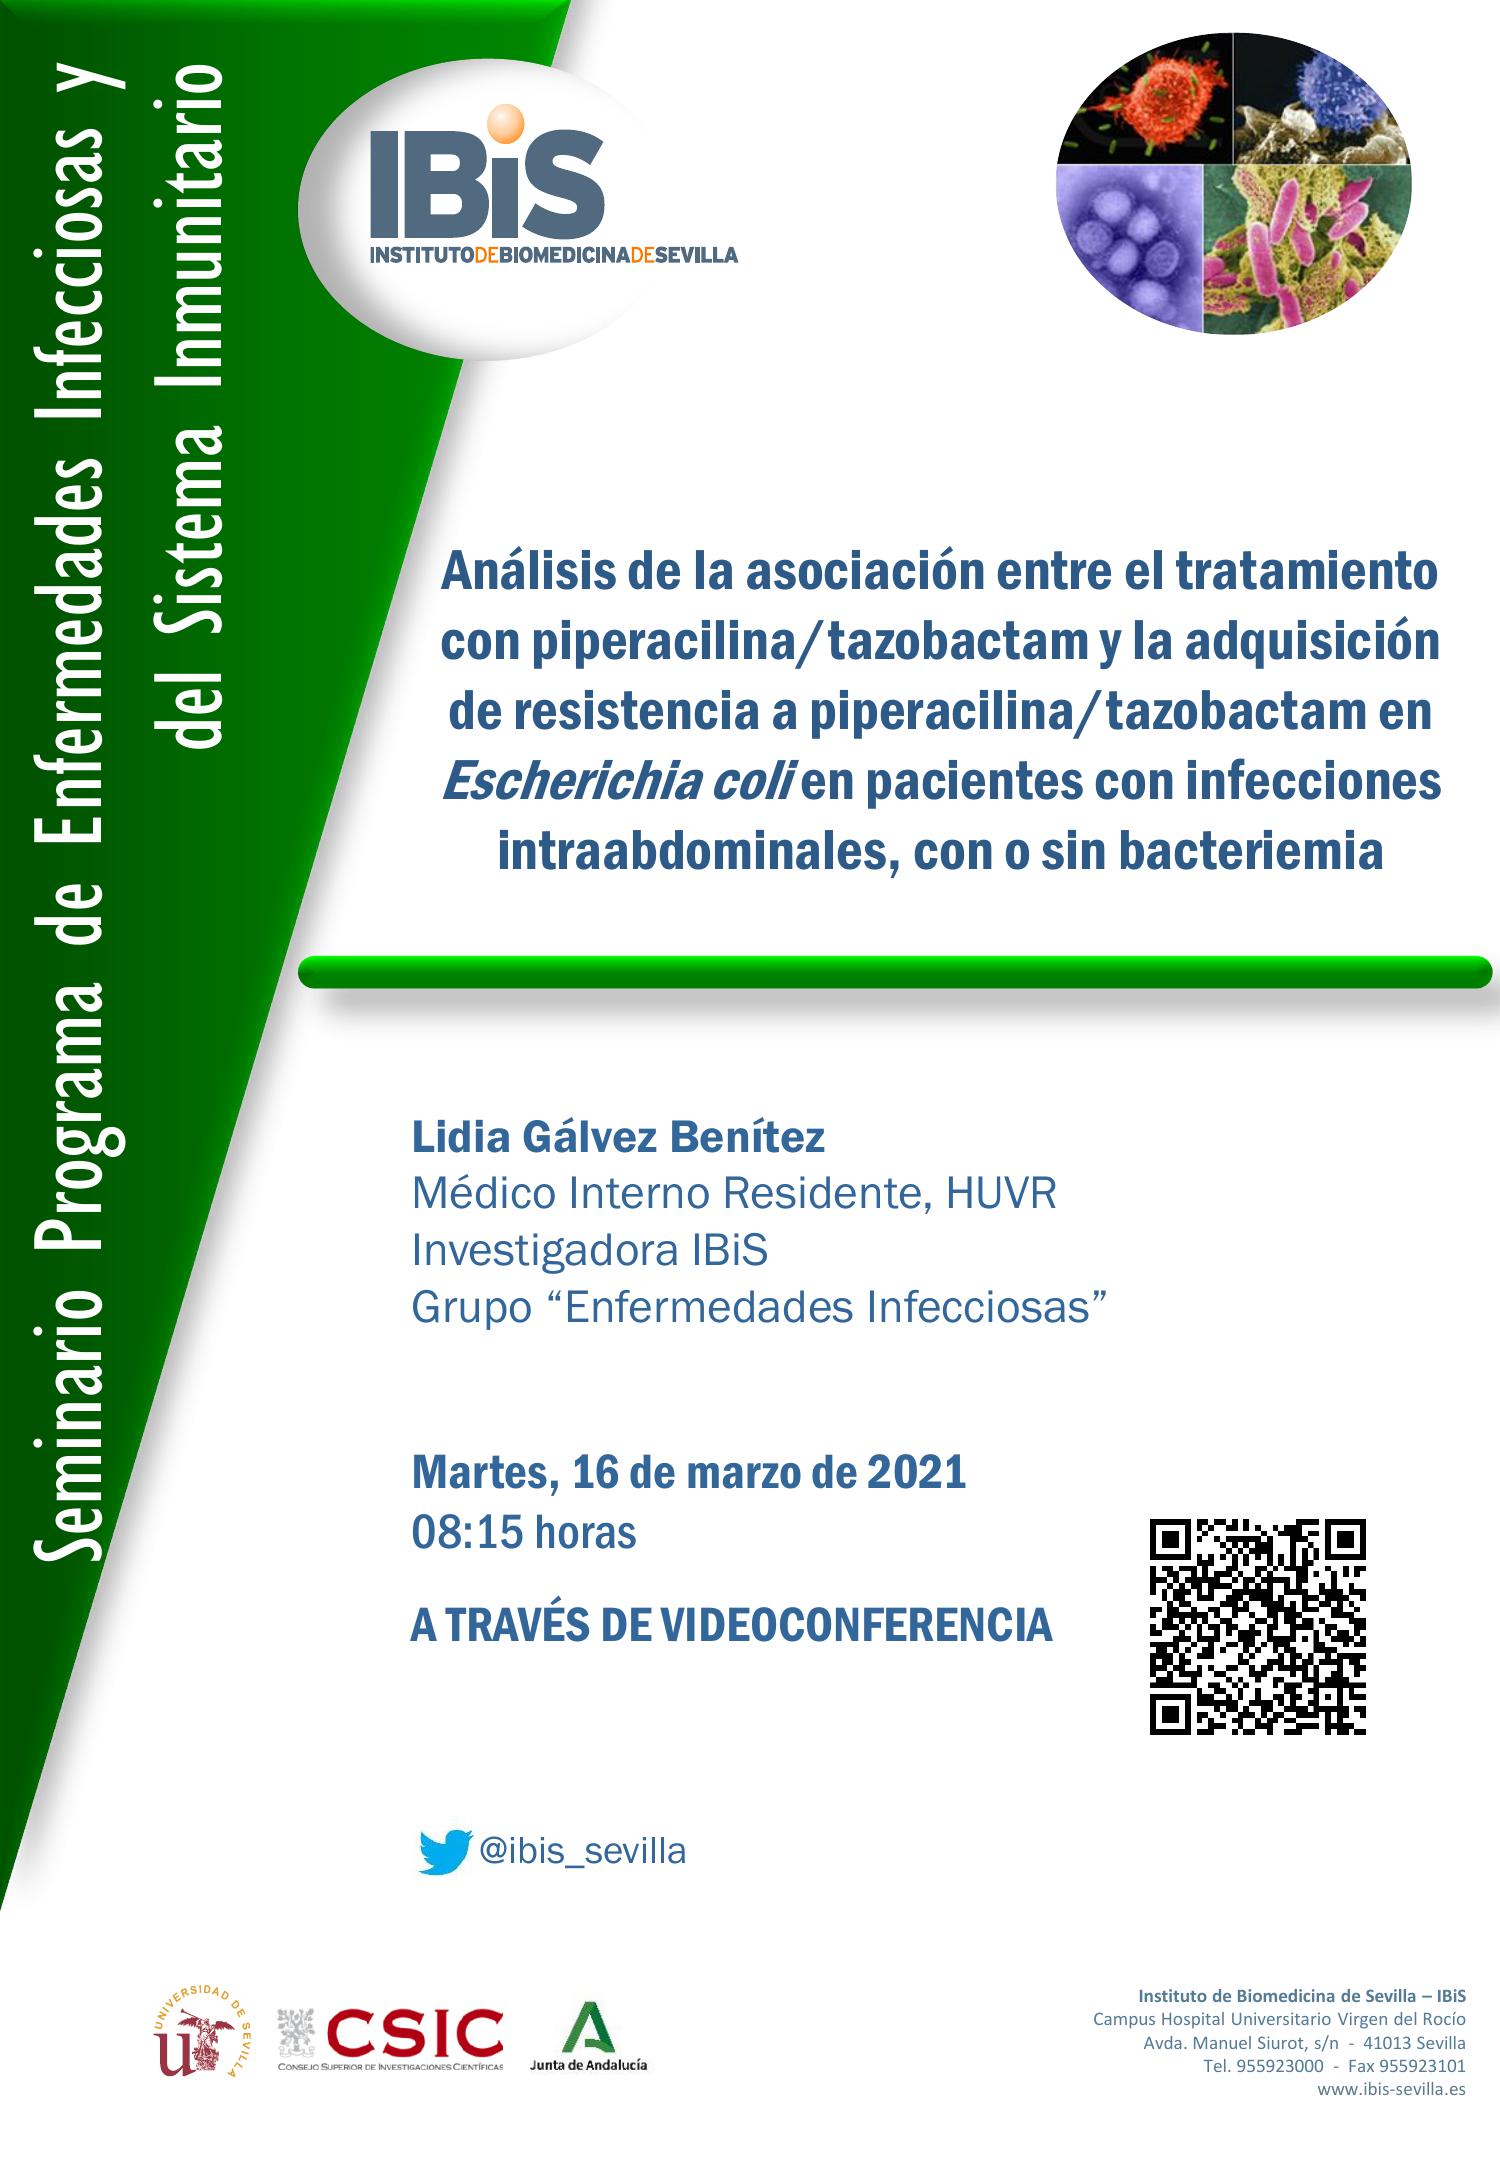 Poster: Análisis de la asociación entre el tratamiento con piperacilina/tazobactam y la adquisición de resistencia a piperacilina/tazobactam en Escherichia coli en pacientes con infecciones intraabdominales, con o sin bacteriemia